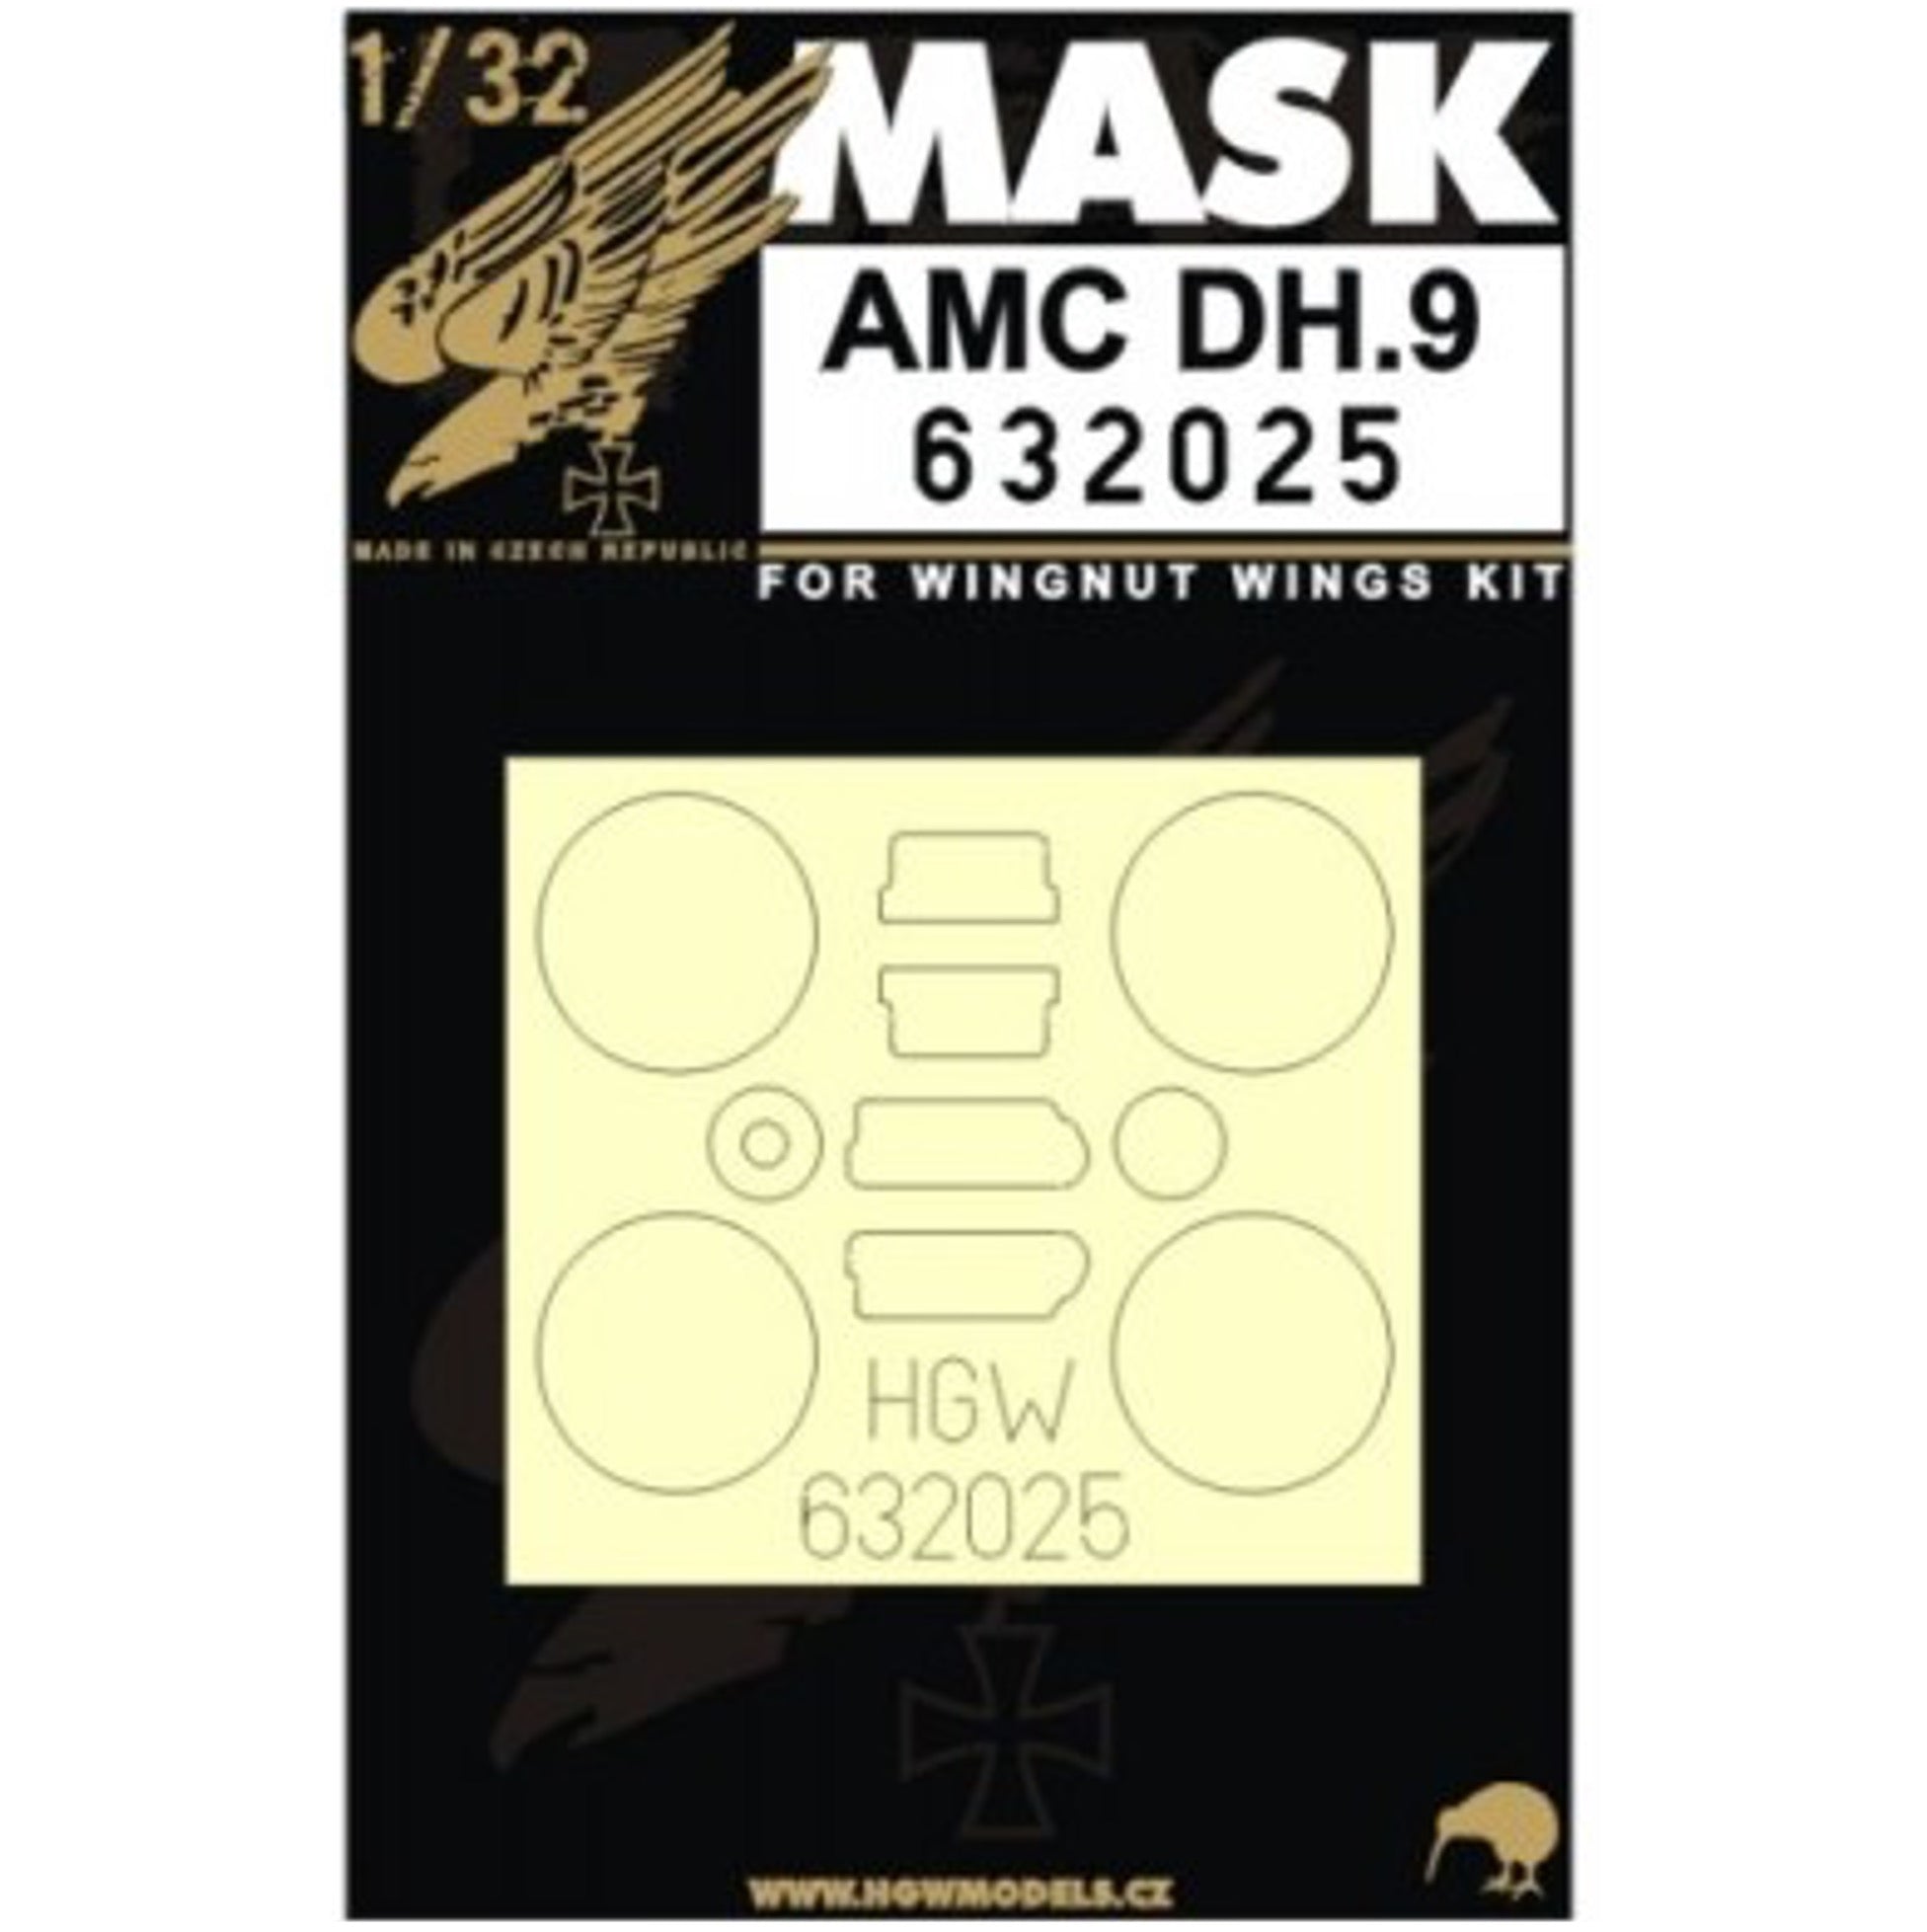 1/32 - Masks - AMC DH.9